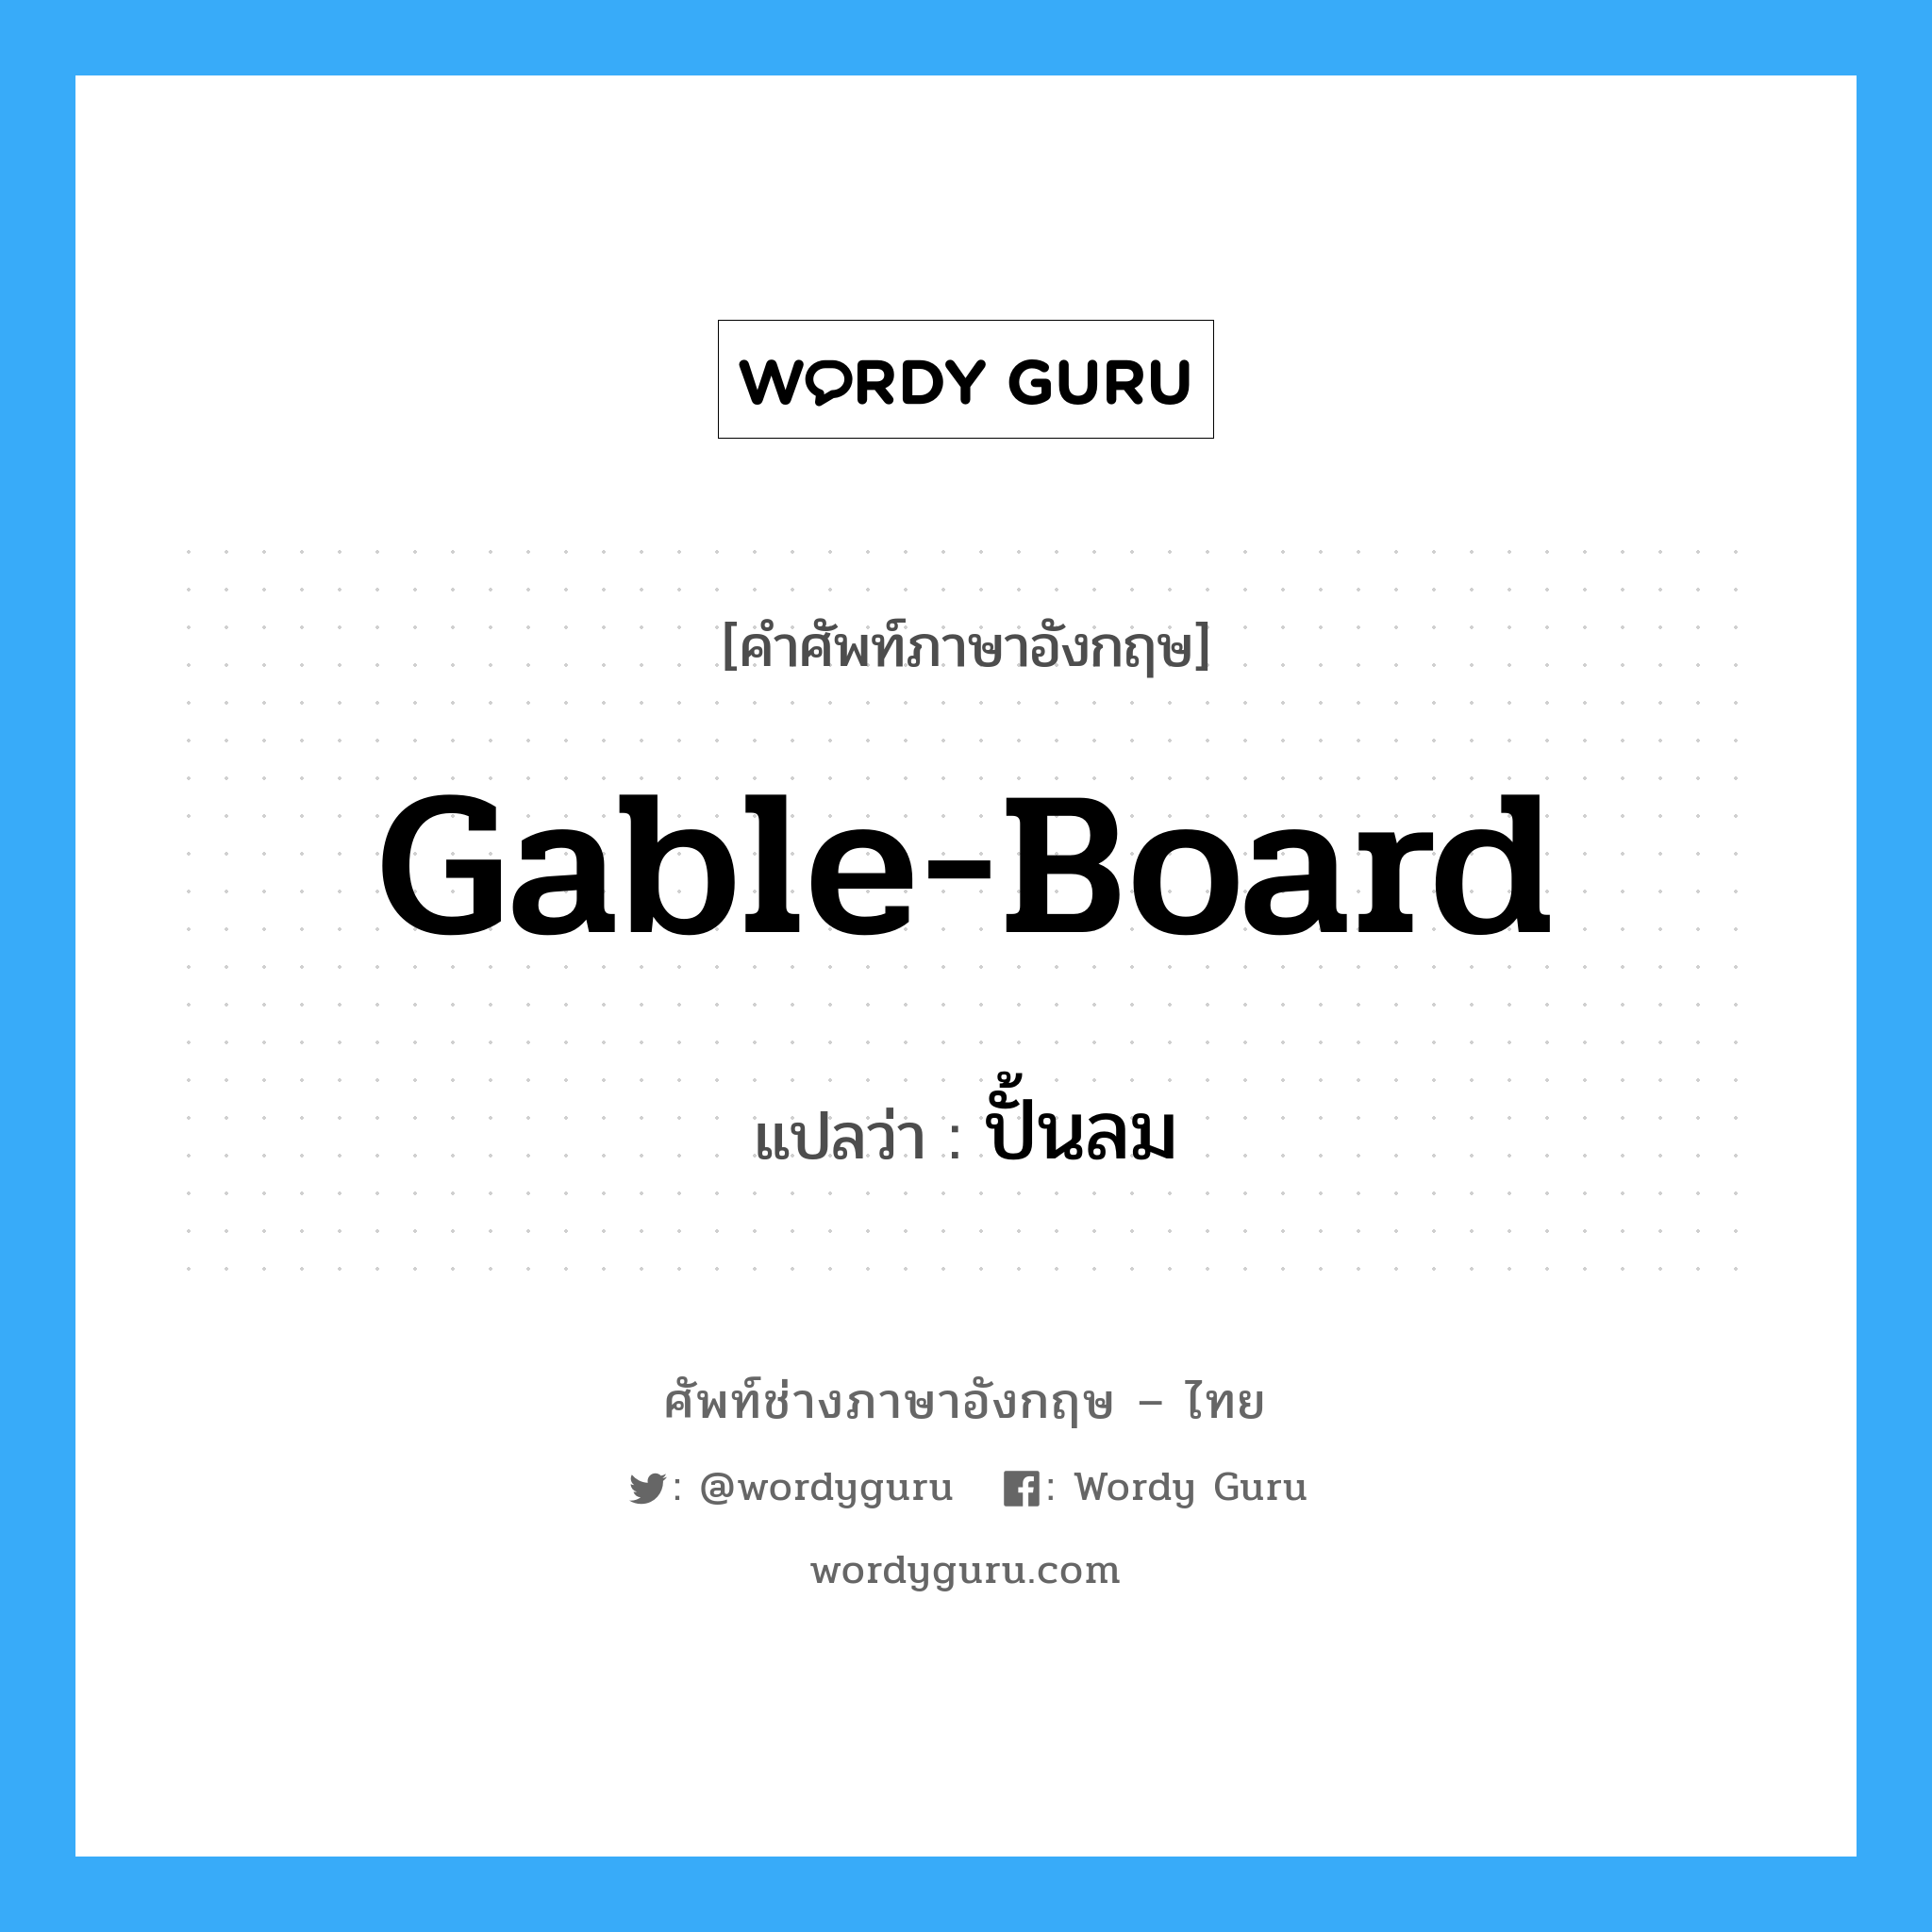 gable-board แปลว่า?, คำศัพท์ช่างภาษาอังกฤษ - ไทย gable-board คำศัพท์ภาษาอังกฤษ gable-board แปลว่า ปั้นลม